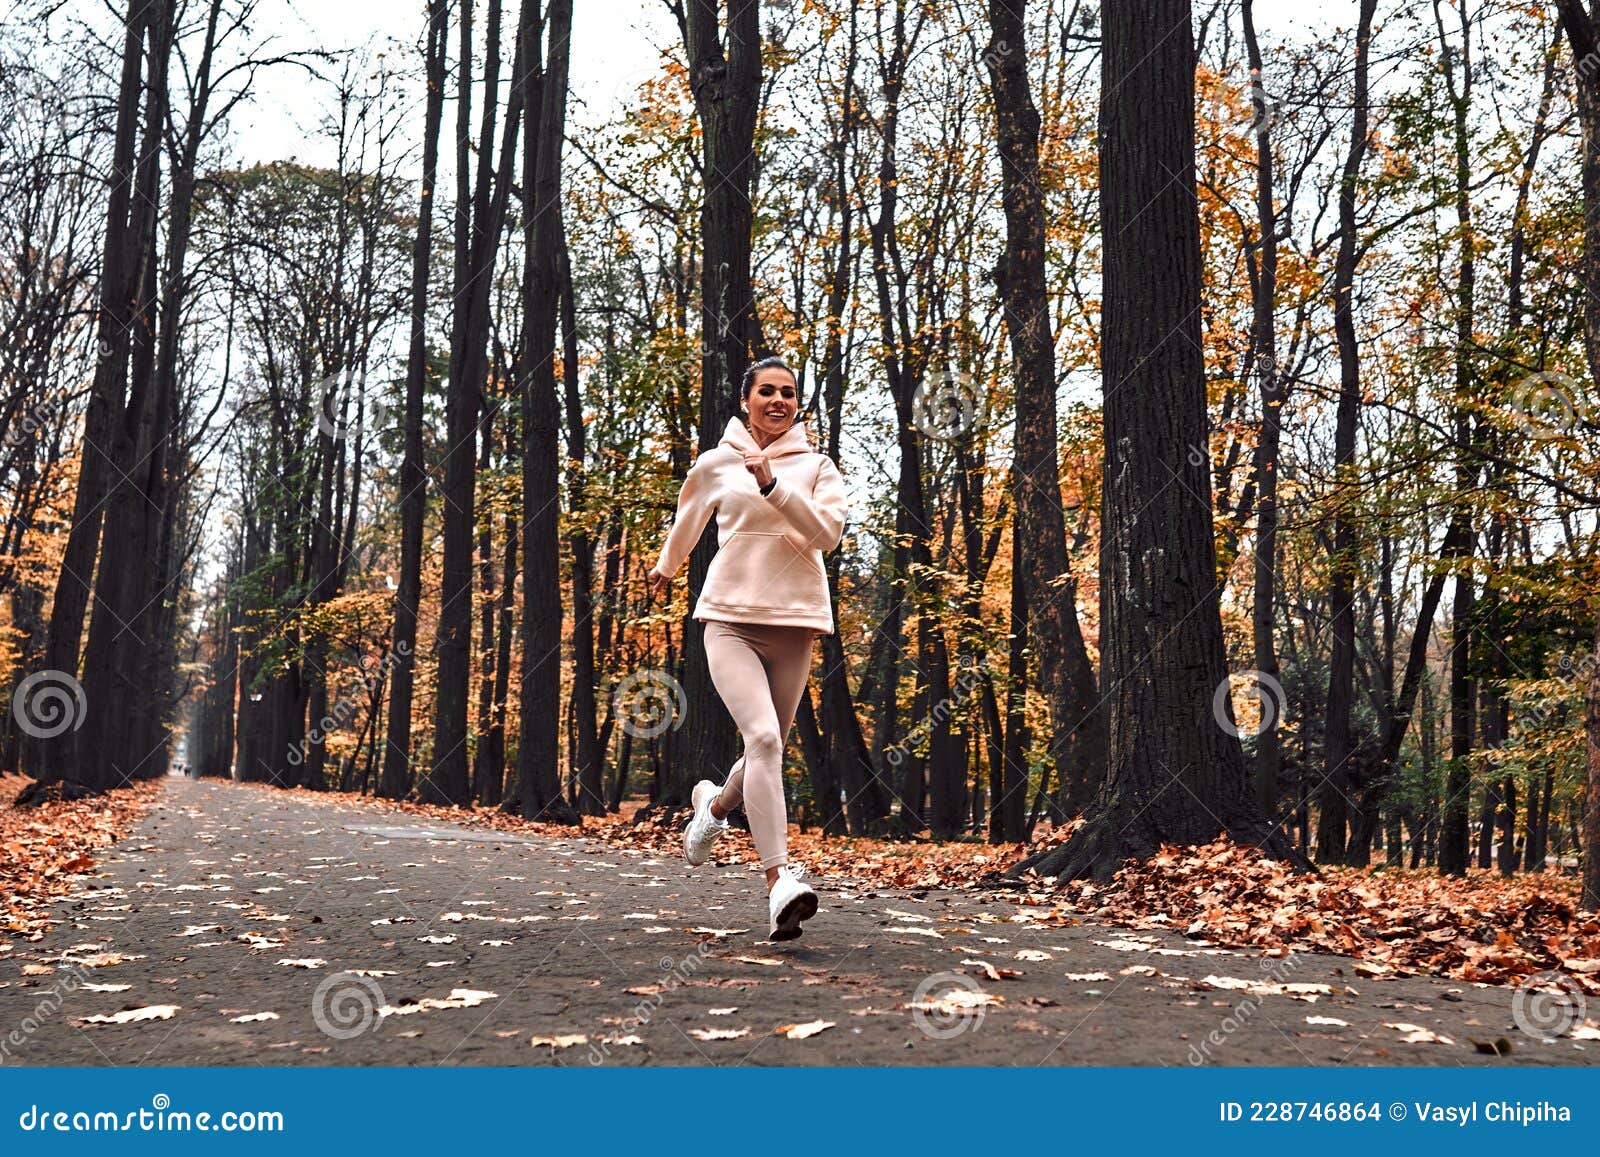 清晨阳光下年轻的健身女子运动健身户外跑步图片下载 - 觅知网